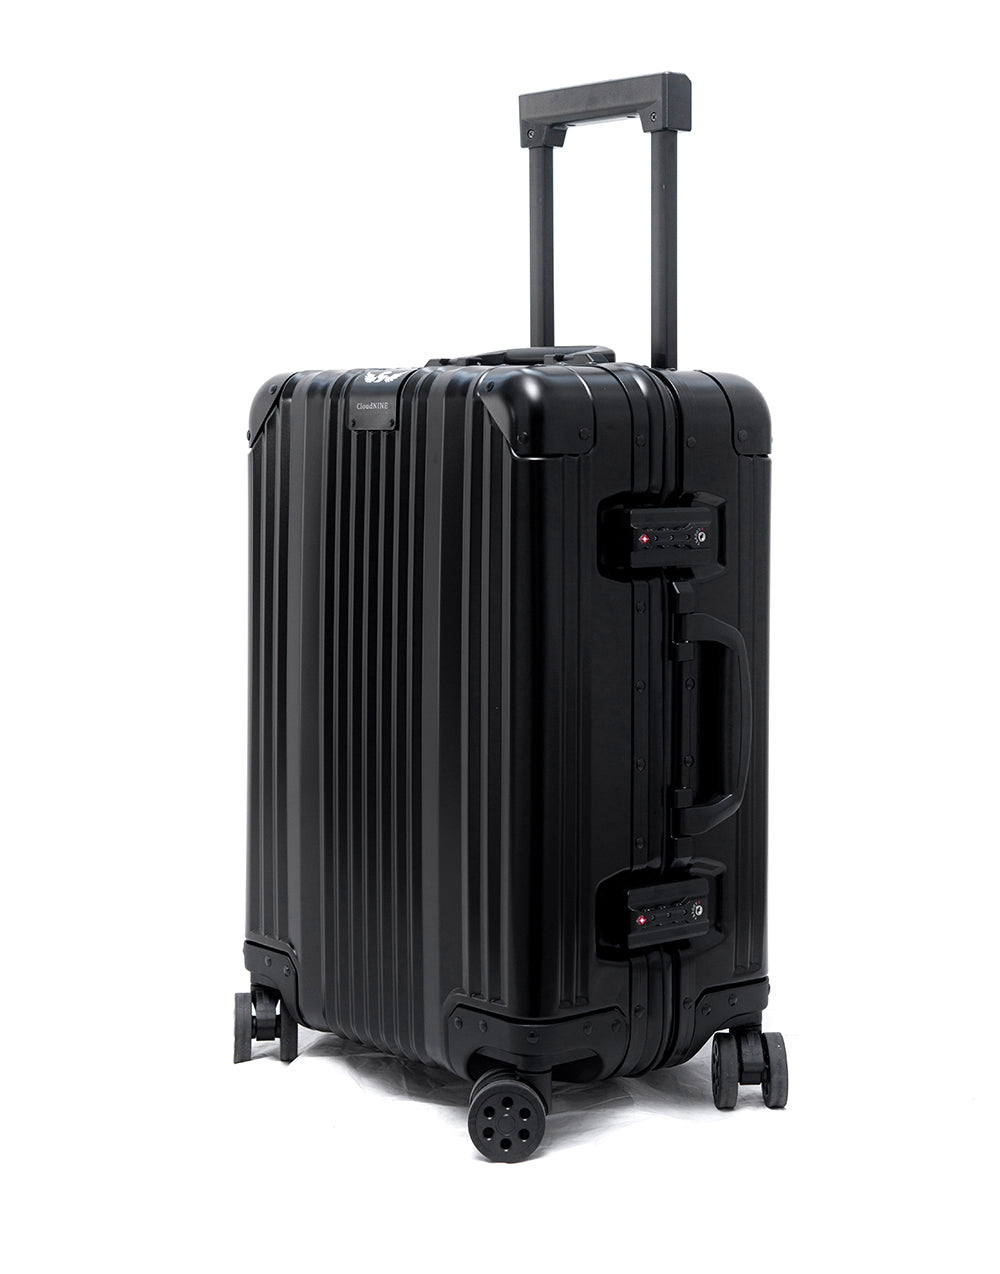 20 Aluminum Luggage Carry-On (Black) – Newbee Fashion ®